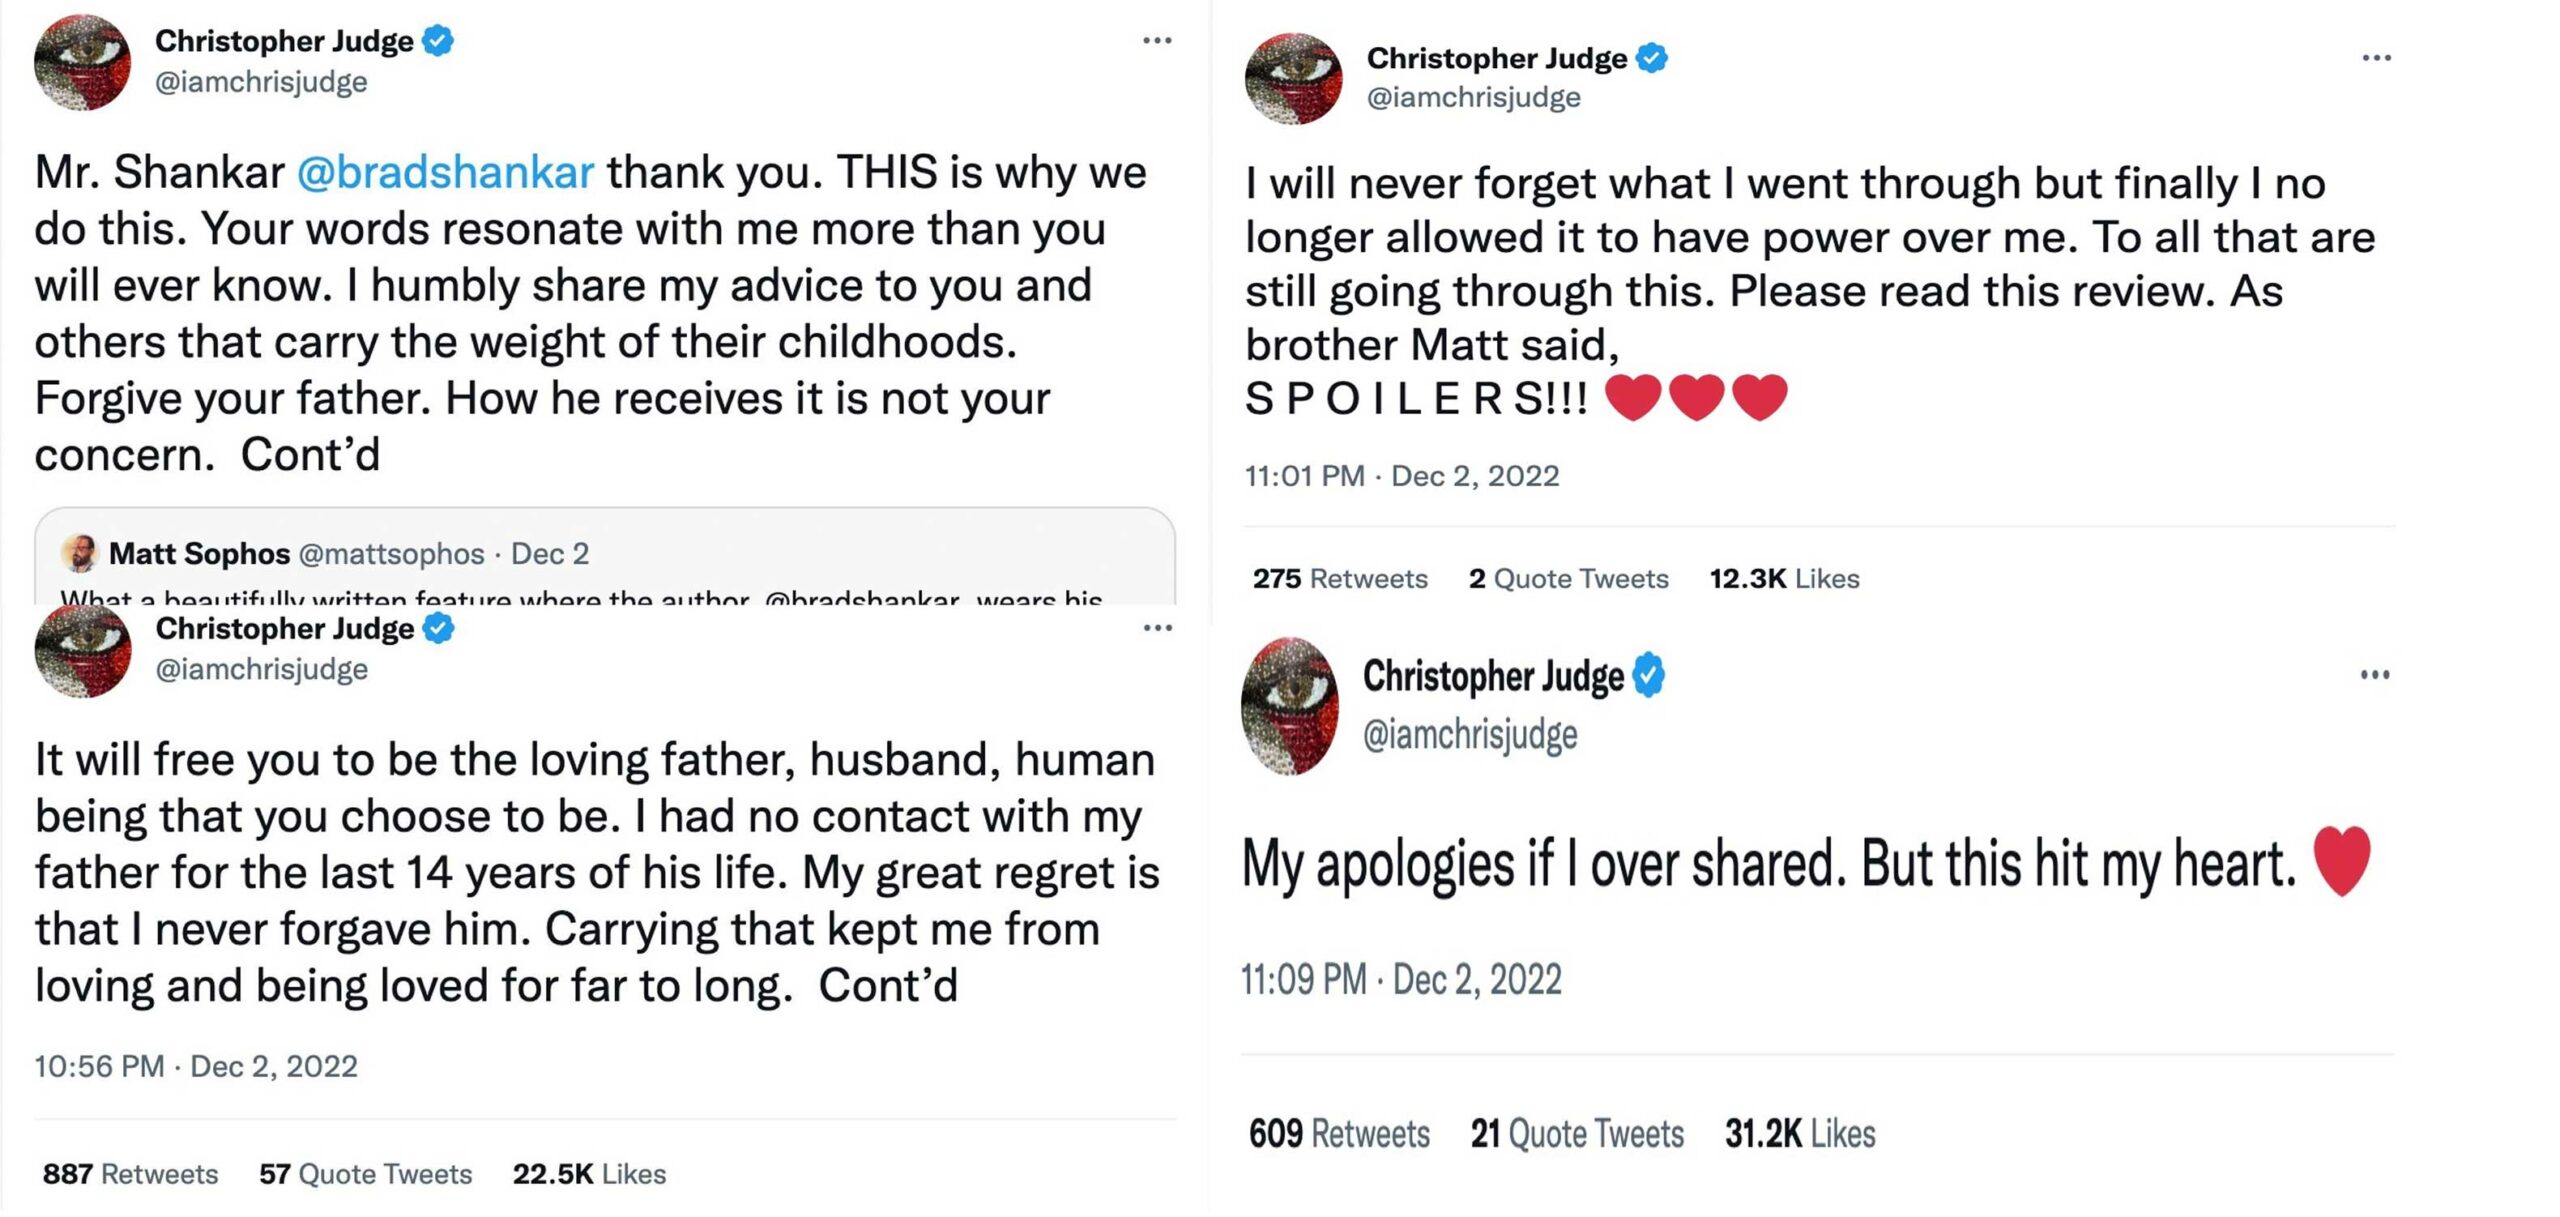 Christopher Judge tweets